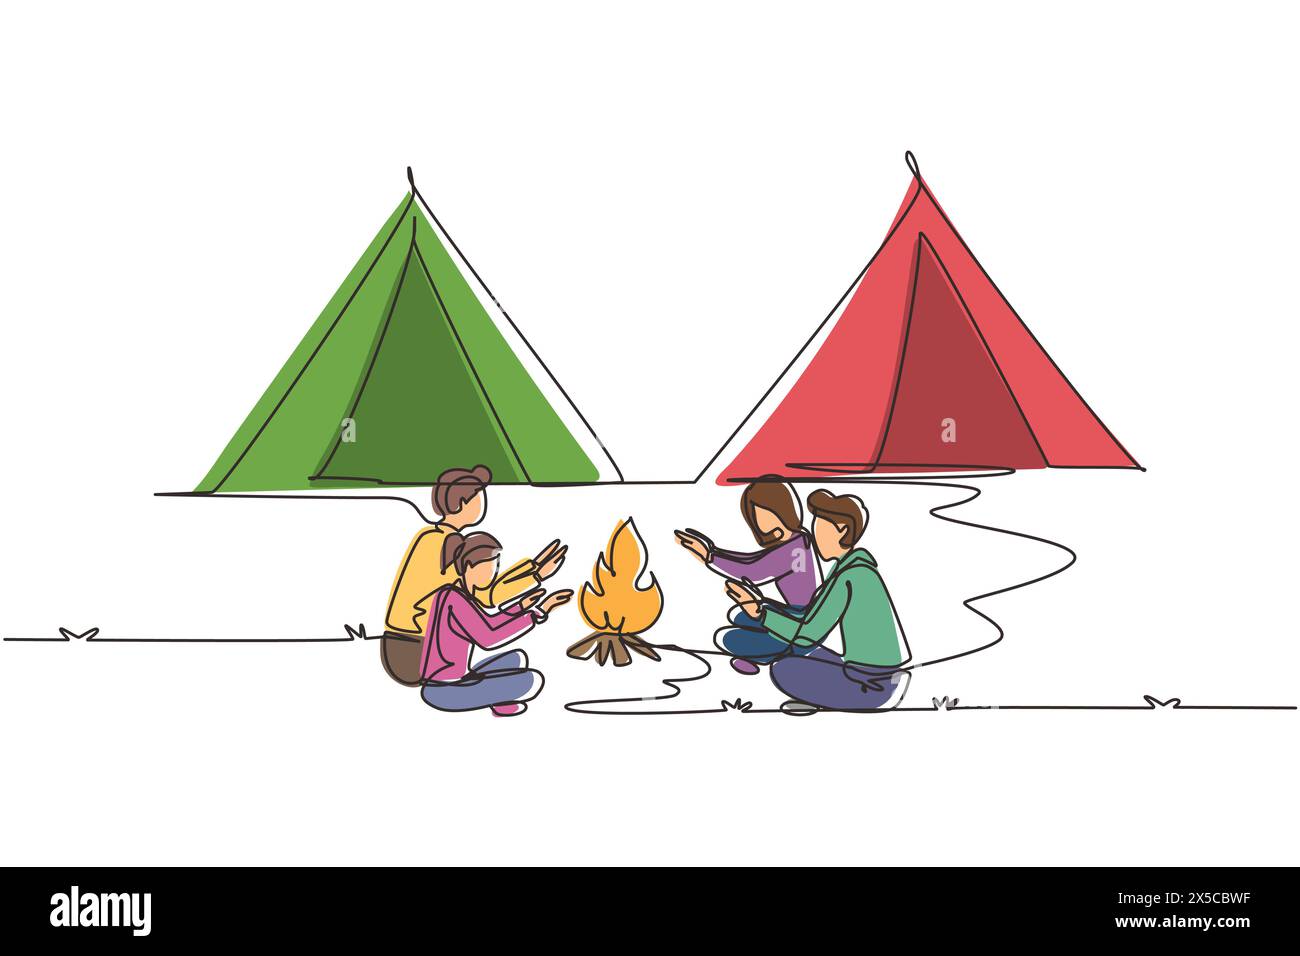 Una fila singola che disegna due coppie in campeggio intorno alle tende da campeggio. Un gruppo di uomini e donne si scaldano le mani vicino al falò seduto a terra. Gita nella natura selvaggia Illustrazione Vettoriale